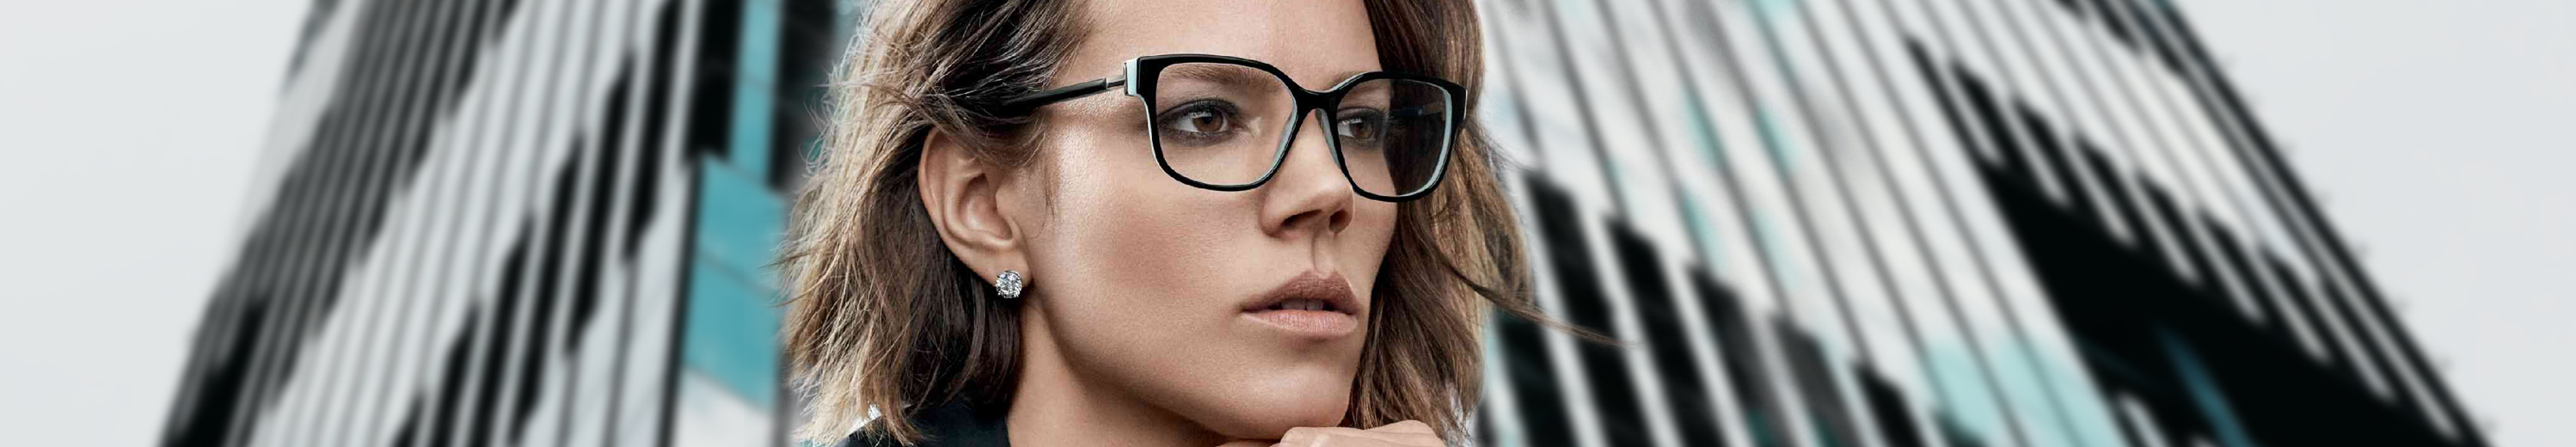 Tiffany Eyeglasses